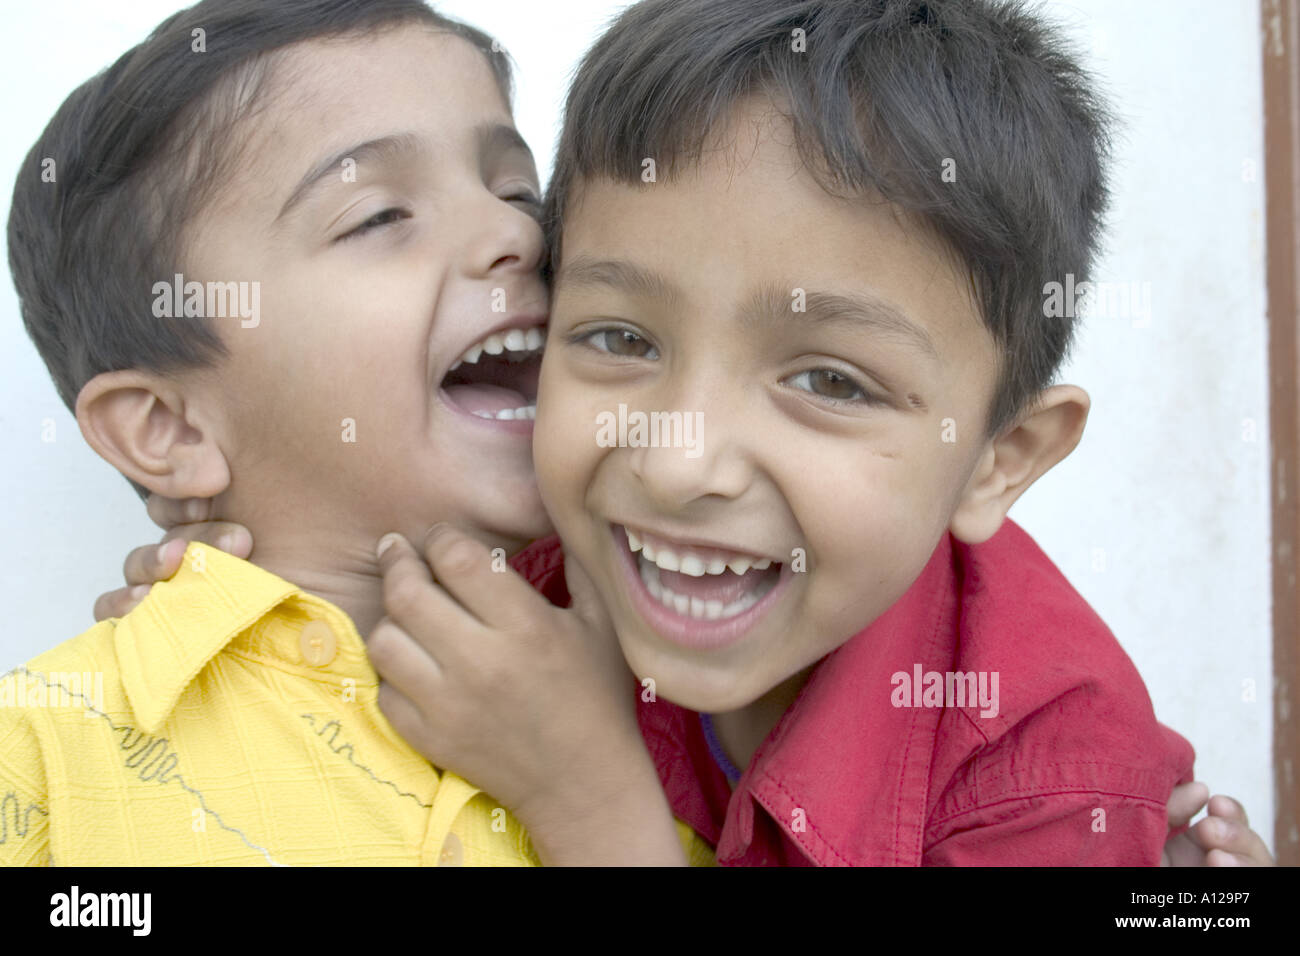 Zwei indischen jungen Kids Kinder Lächeln, lachen, spielen Scherz umarmt Spaß lustig teilen Witz glücklich Zähne Shirt rot, gelb Stockfoto